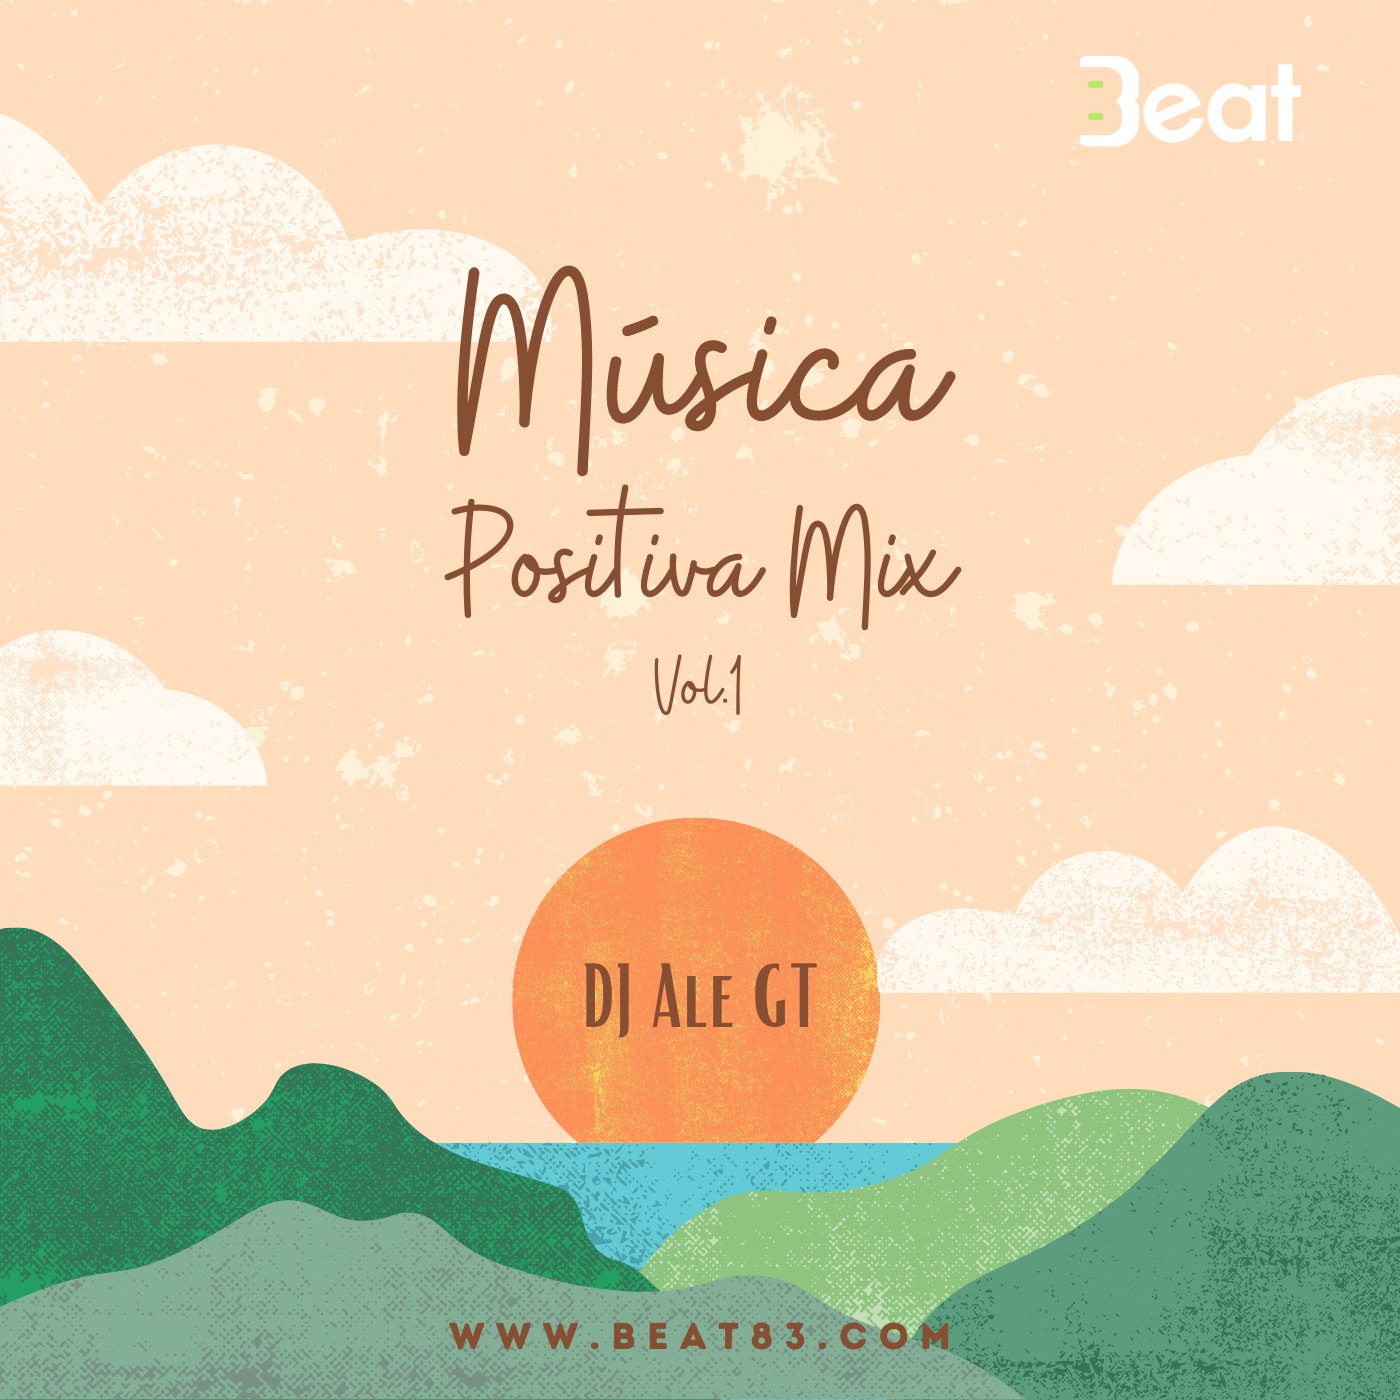 Musica-Positiva-Mix-Vol.1